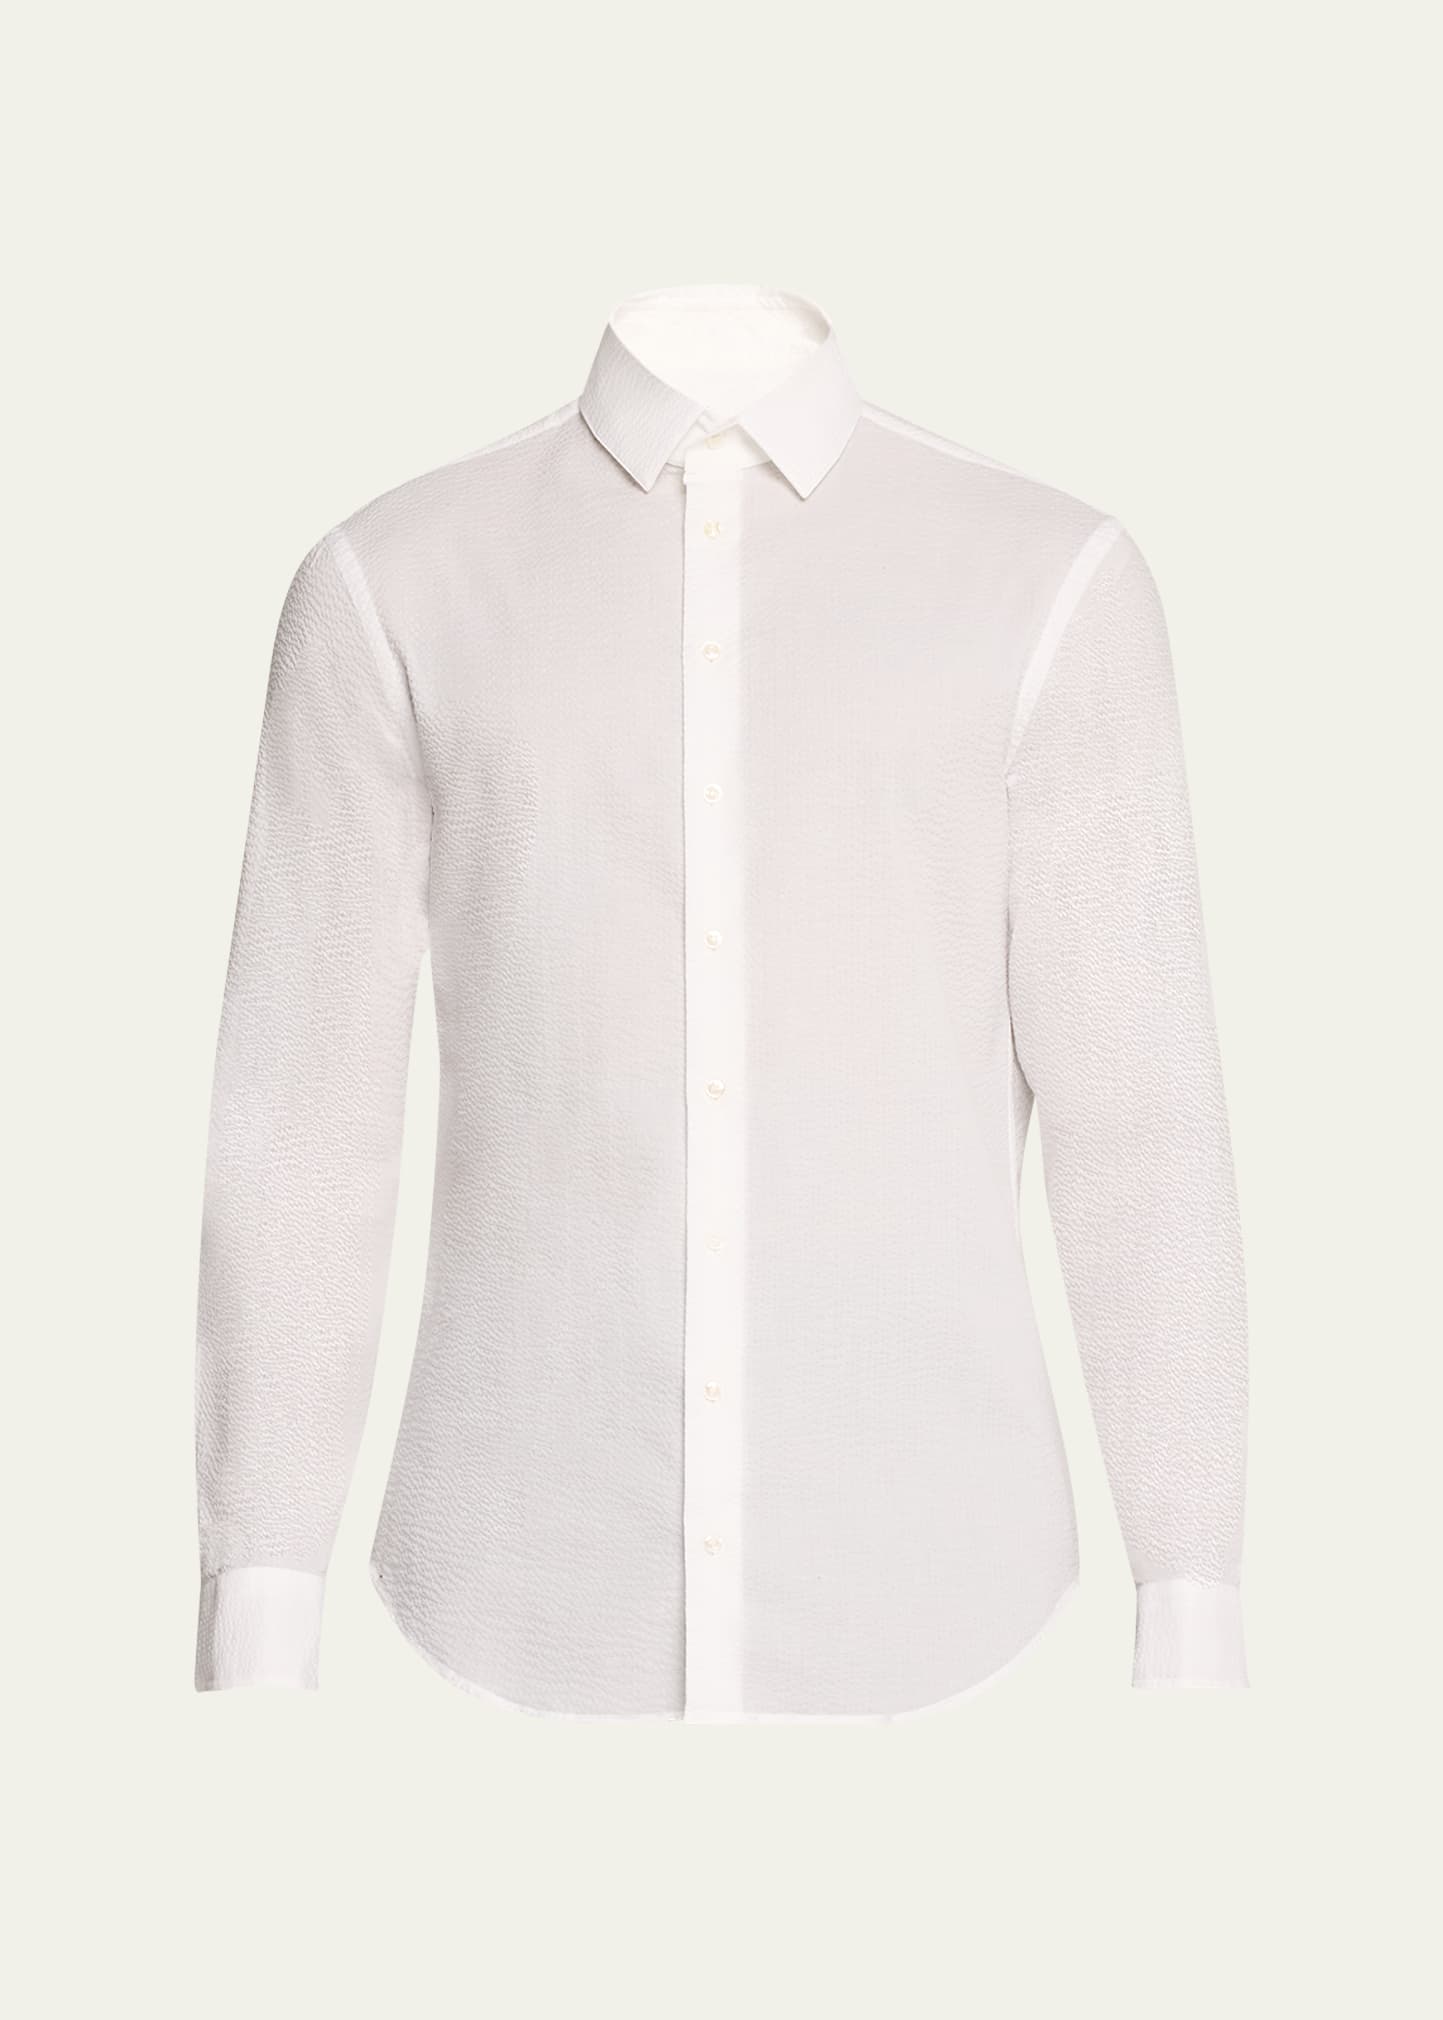 Giorgio Armani Men's Seersucker Sport Shirt In White